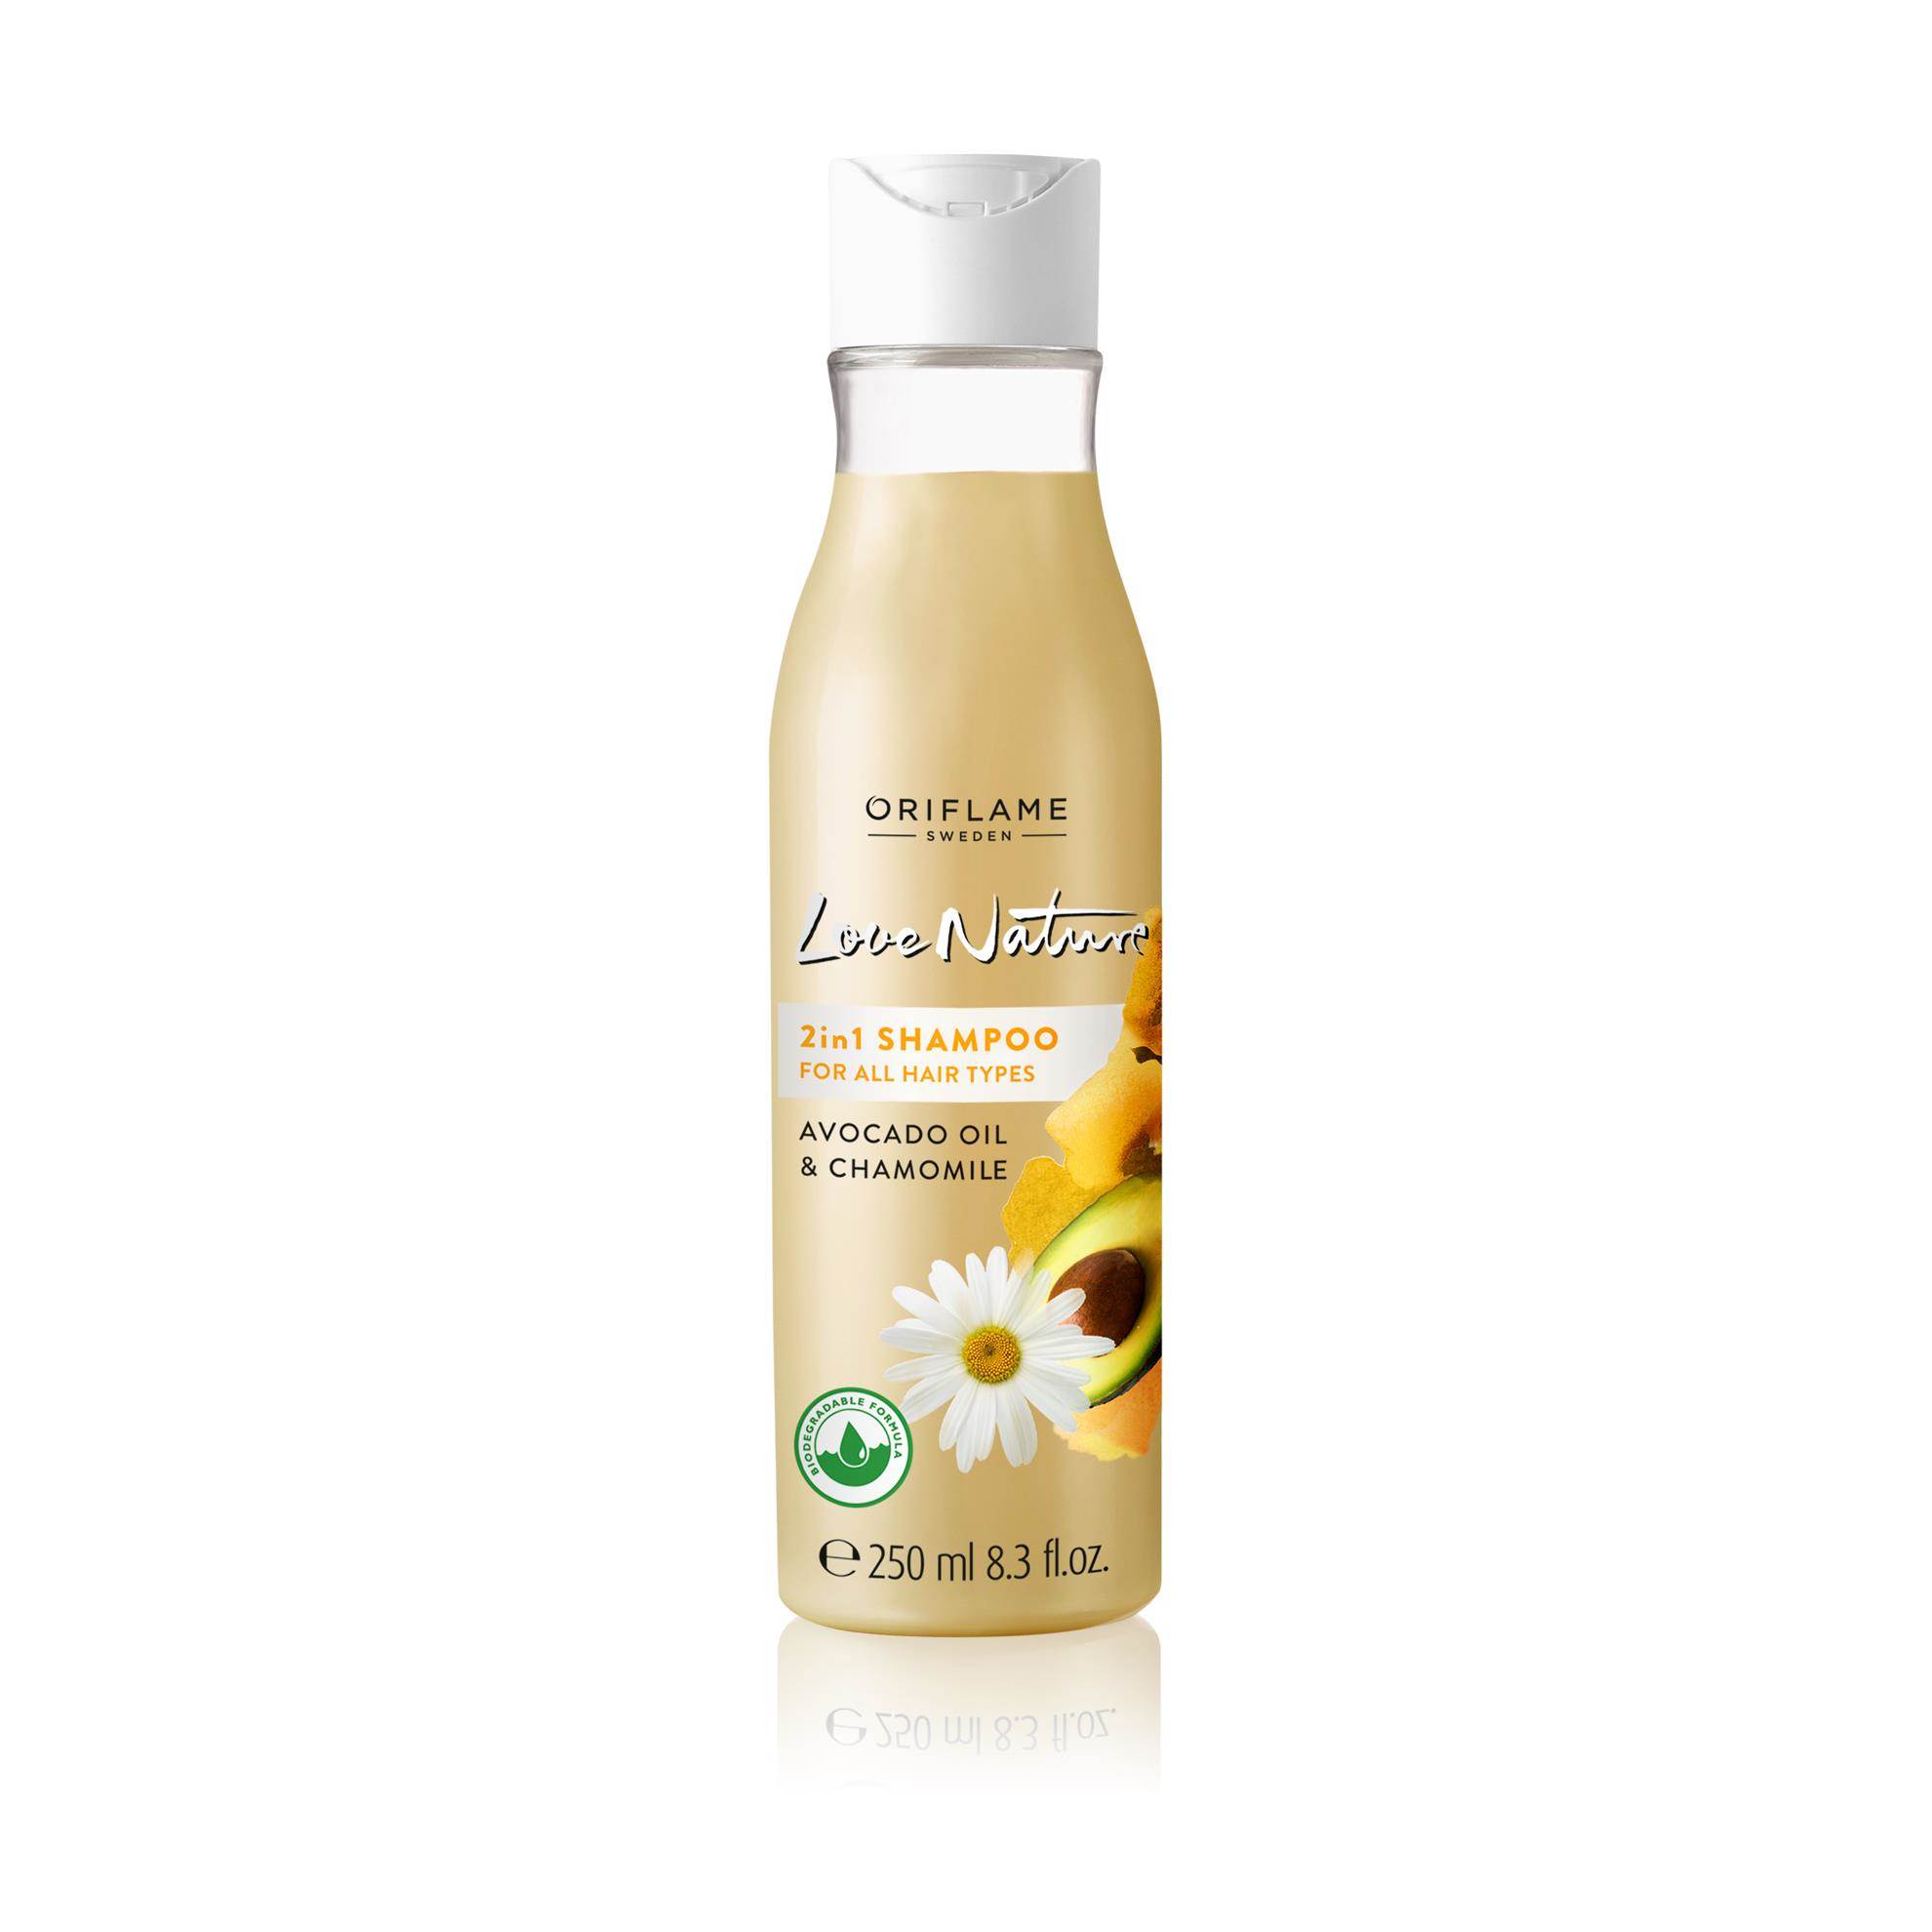 love-nature-2in1-shampoo-avocado-oil-chamomile